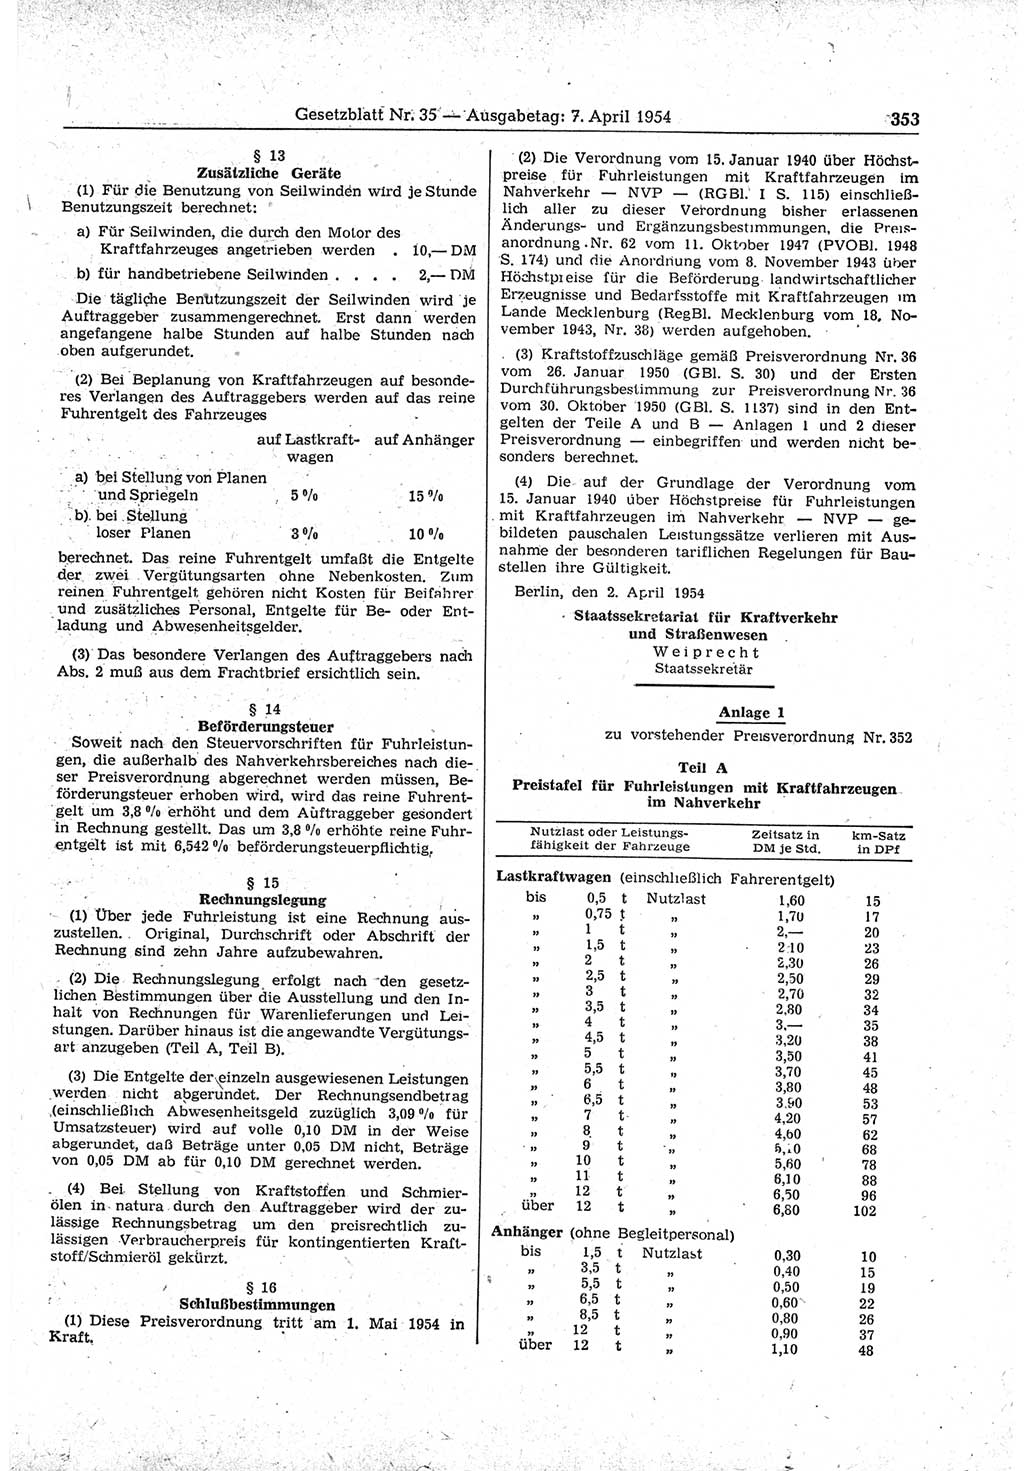 Gesetzblatt (GBl.) der Deutschen Demokratischen Republik (DDR) 1954, Seite 353 (GBl. DDR 1954, S. 353)